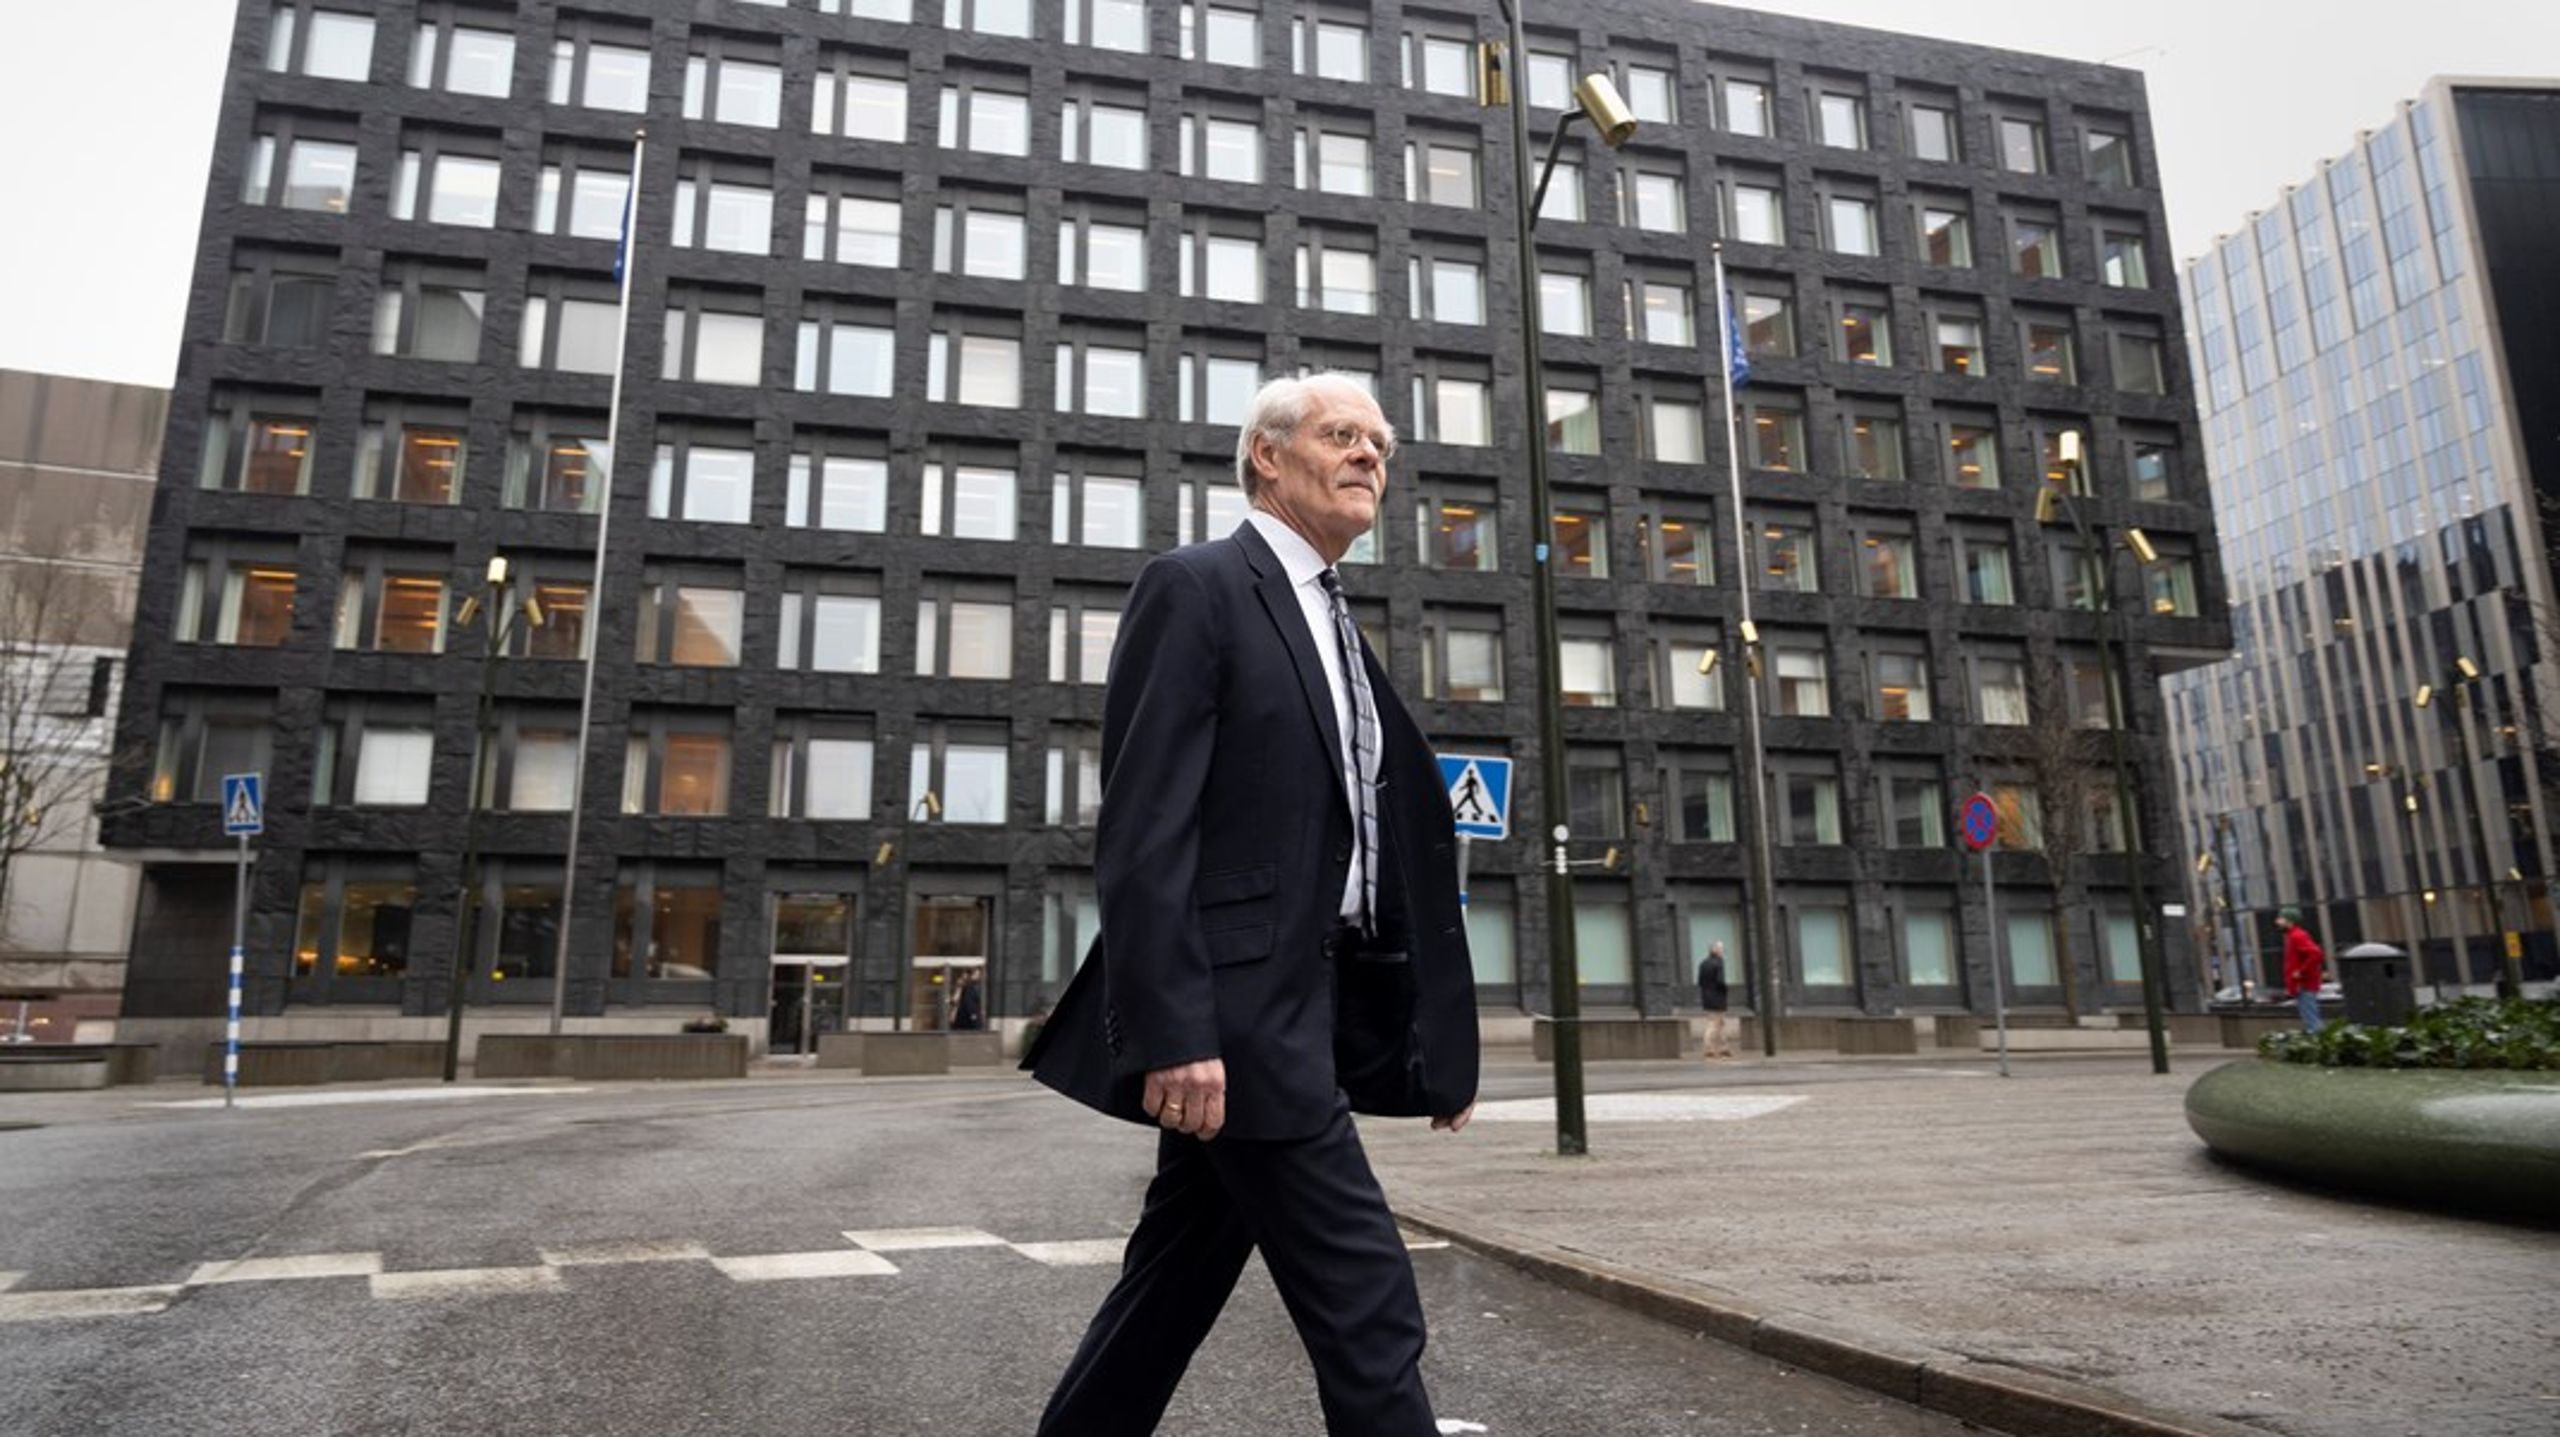 Vid utgången av 2021, då Stefan Ingves fortfarande var riksbankschef, uppgick Riksbankens innehav av värdepapper till 975 miljarder kronor.